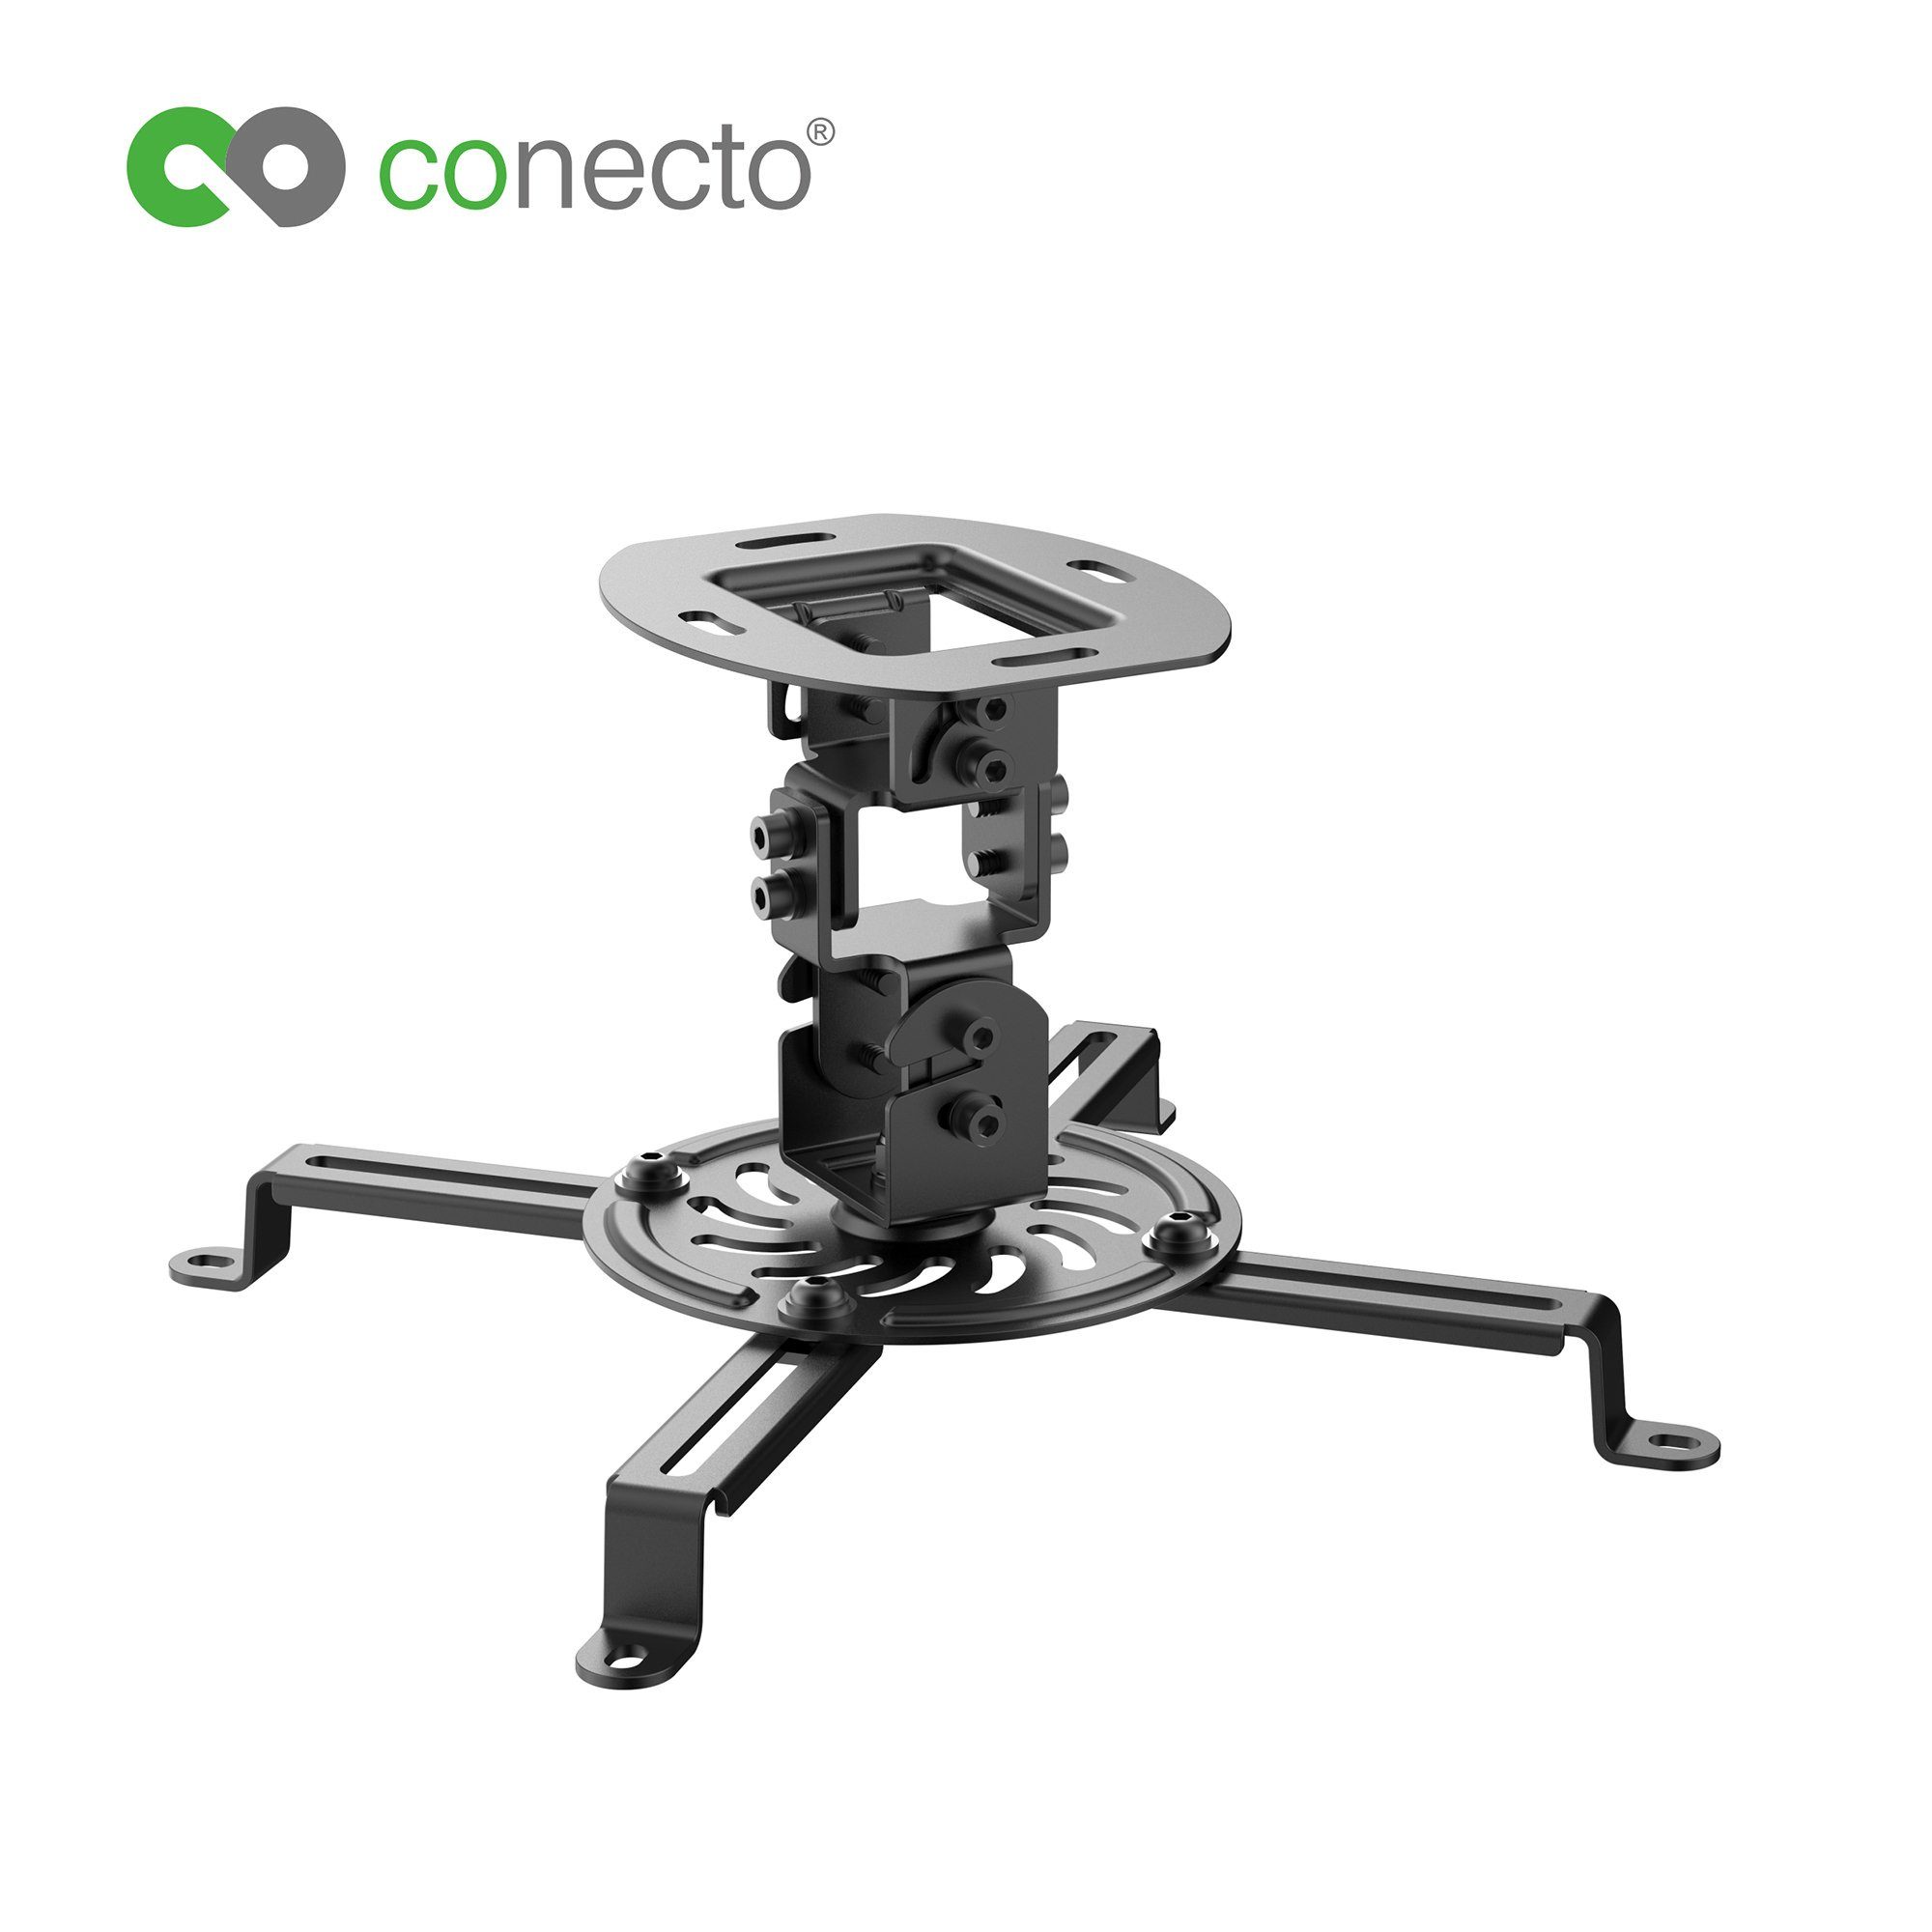 conecto Universal Projektor- Beamer Deckenhalterung Beamer-Deckenhalterung, (schwenkbar um 360°, neigbar)